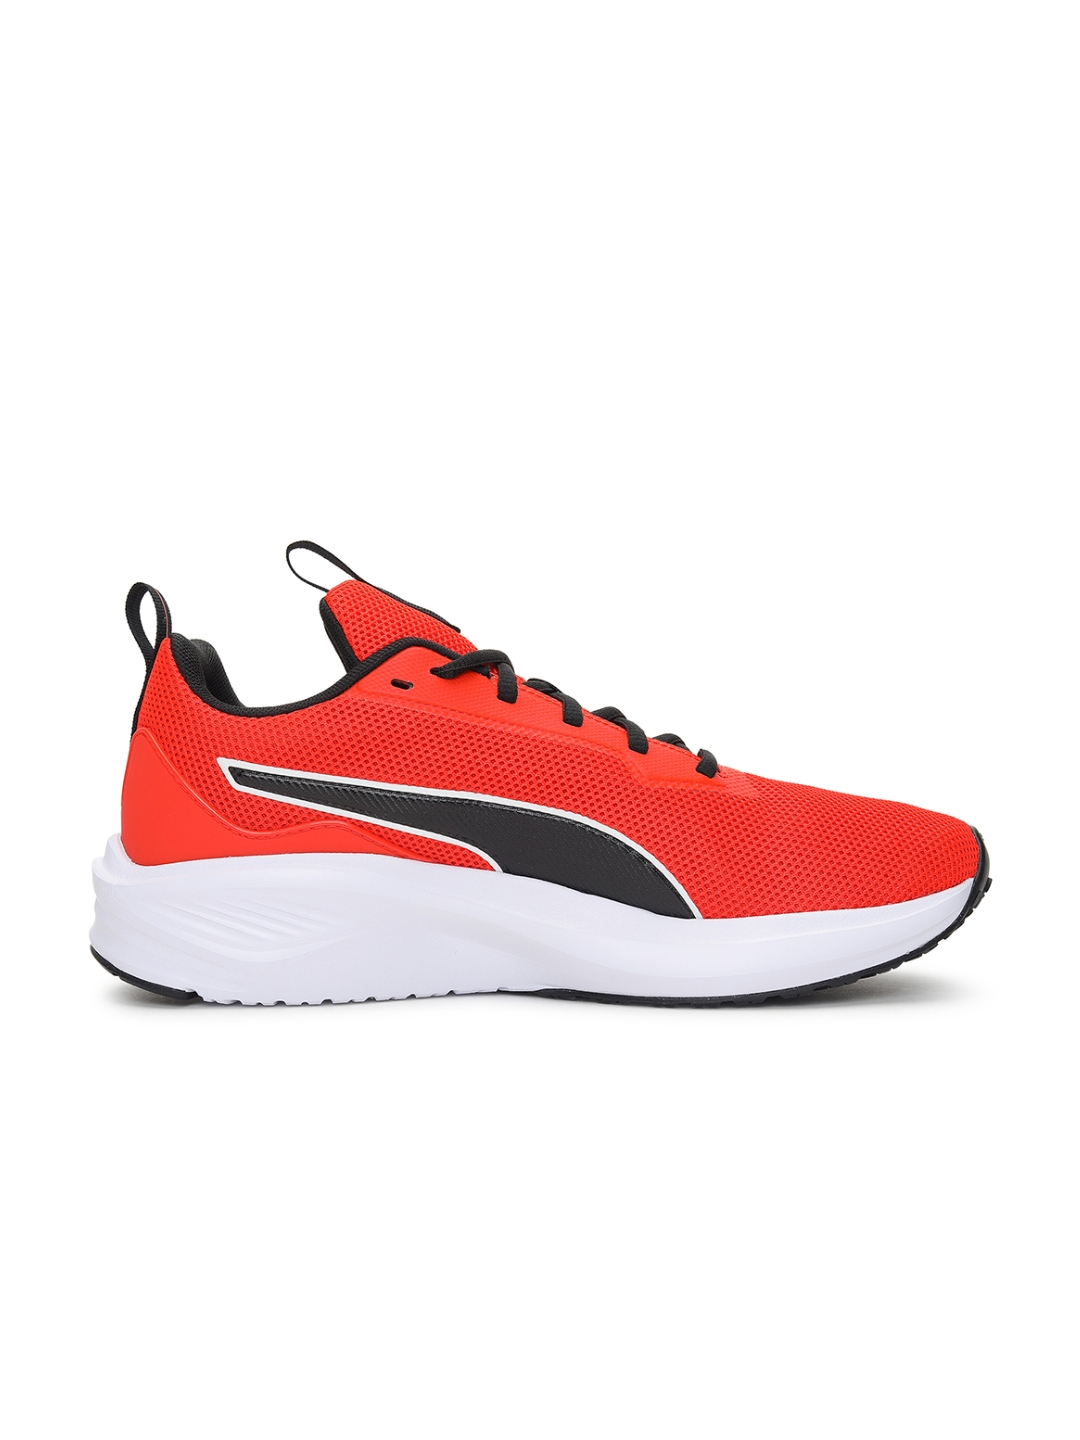 Puma | Fire Runner Profoam Unisex Running Shoes 1